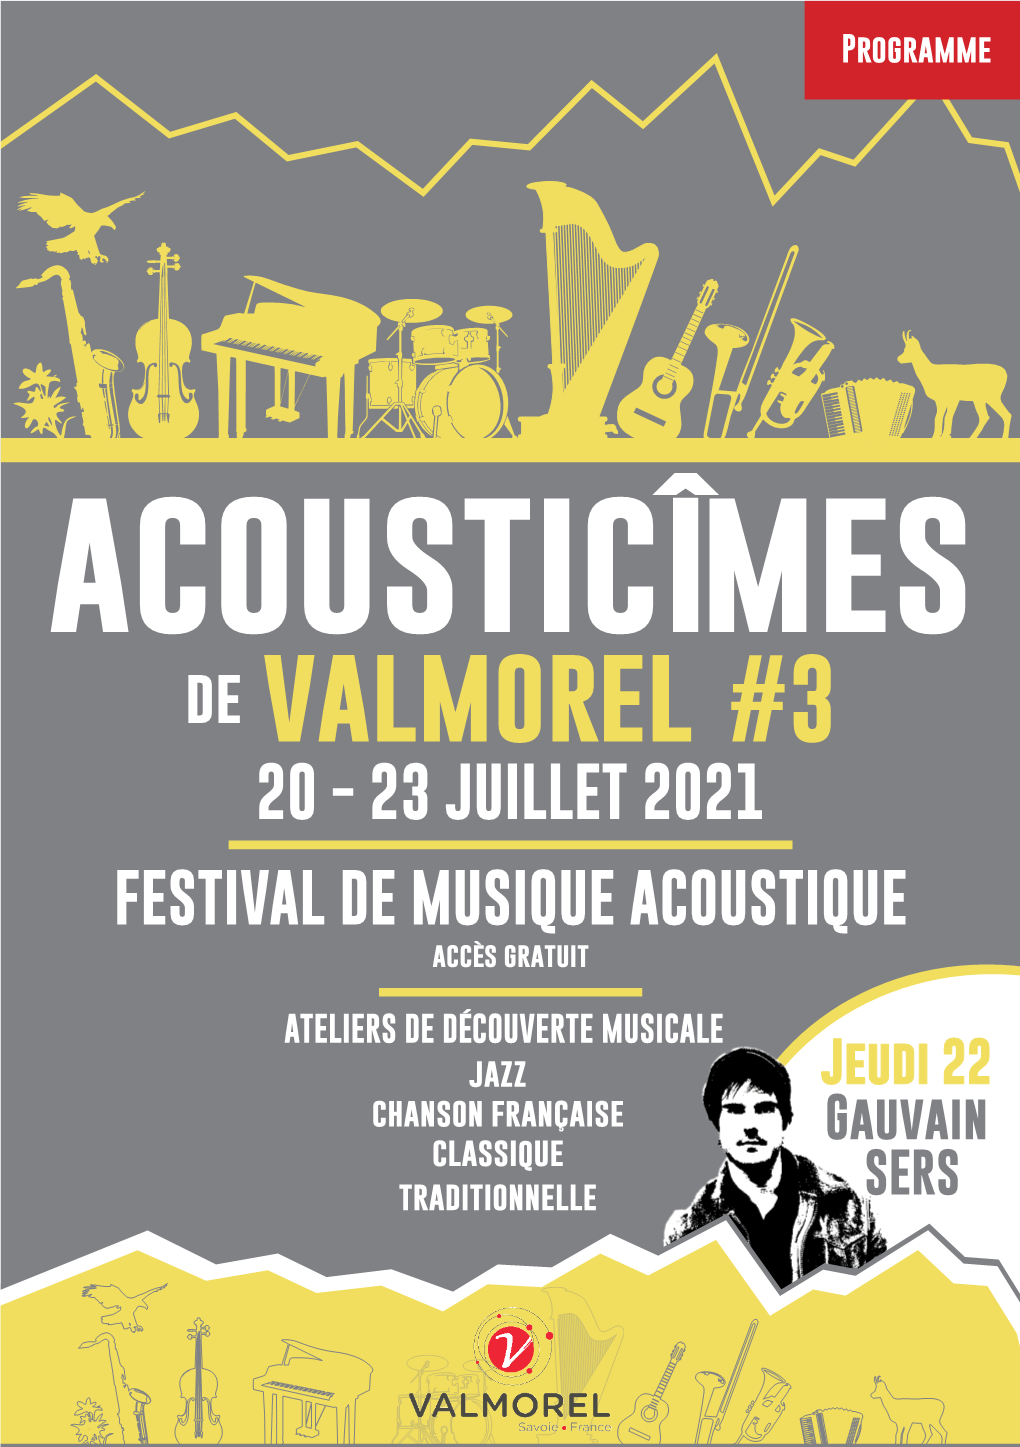 Acousticîmes De Valmorel #3 20 - 23 JUILLET 2021 FESTIVAL DE MUSIQUE ACOUSTIQUE Accès Gratuit